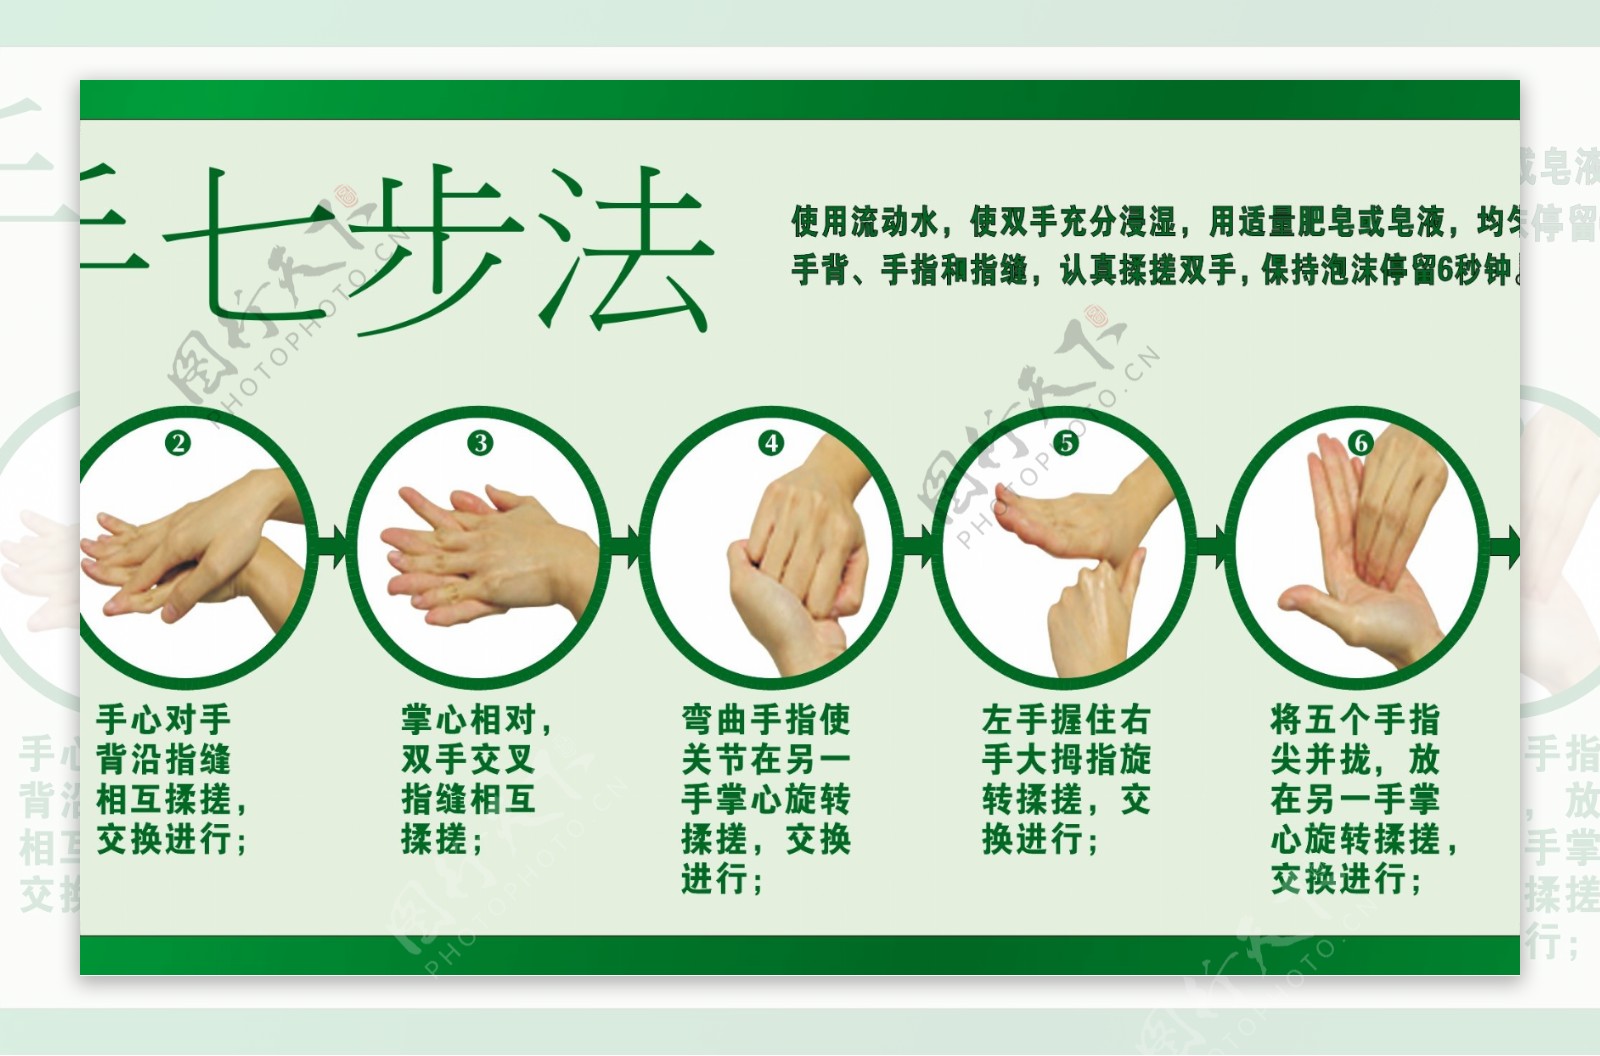 洗手七步法图片